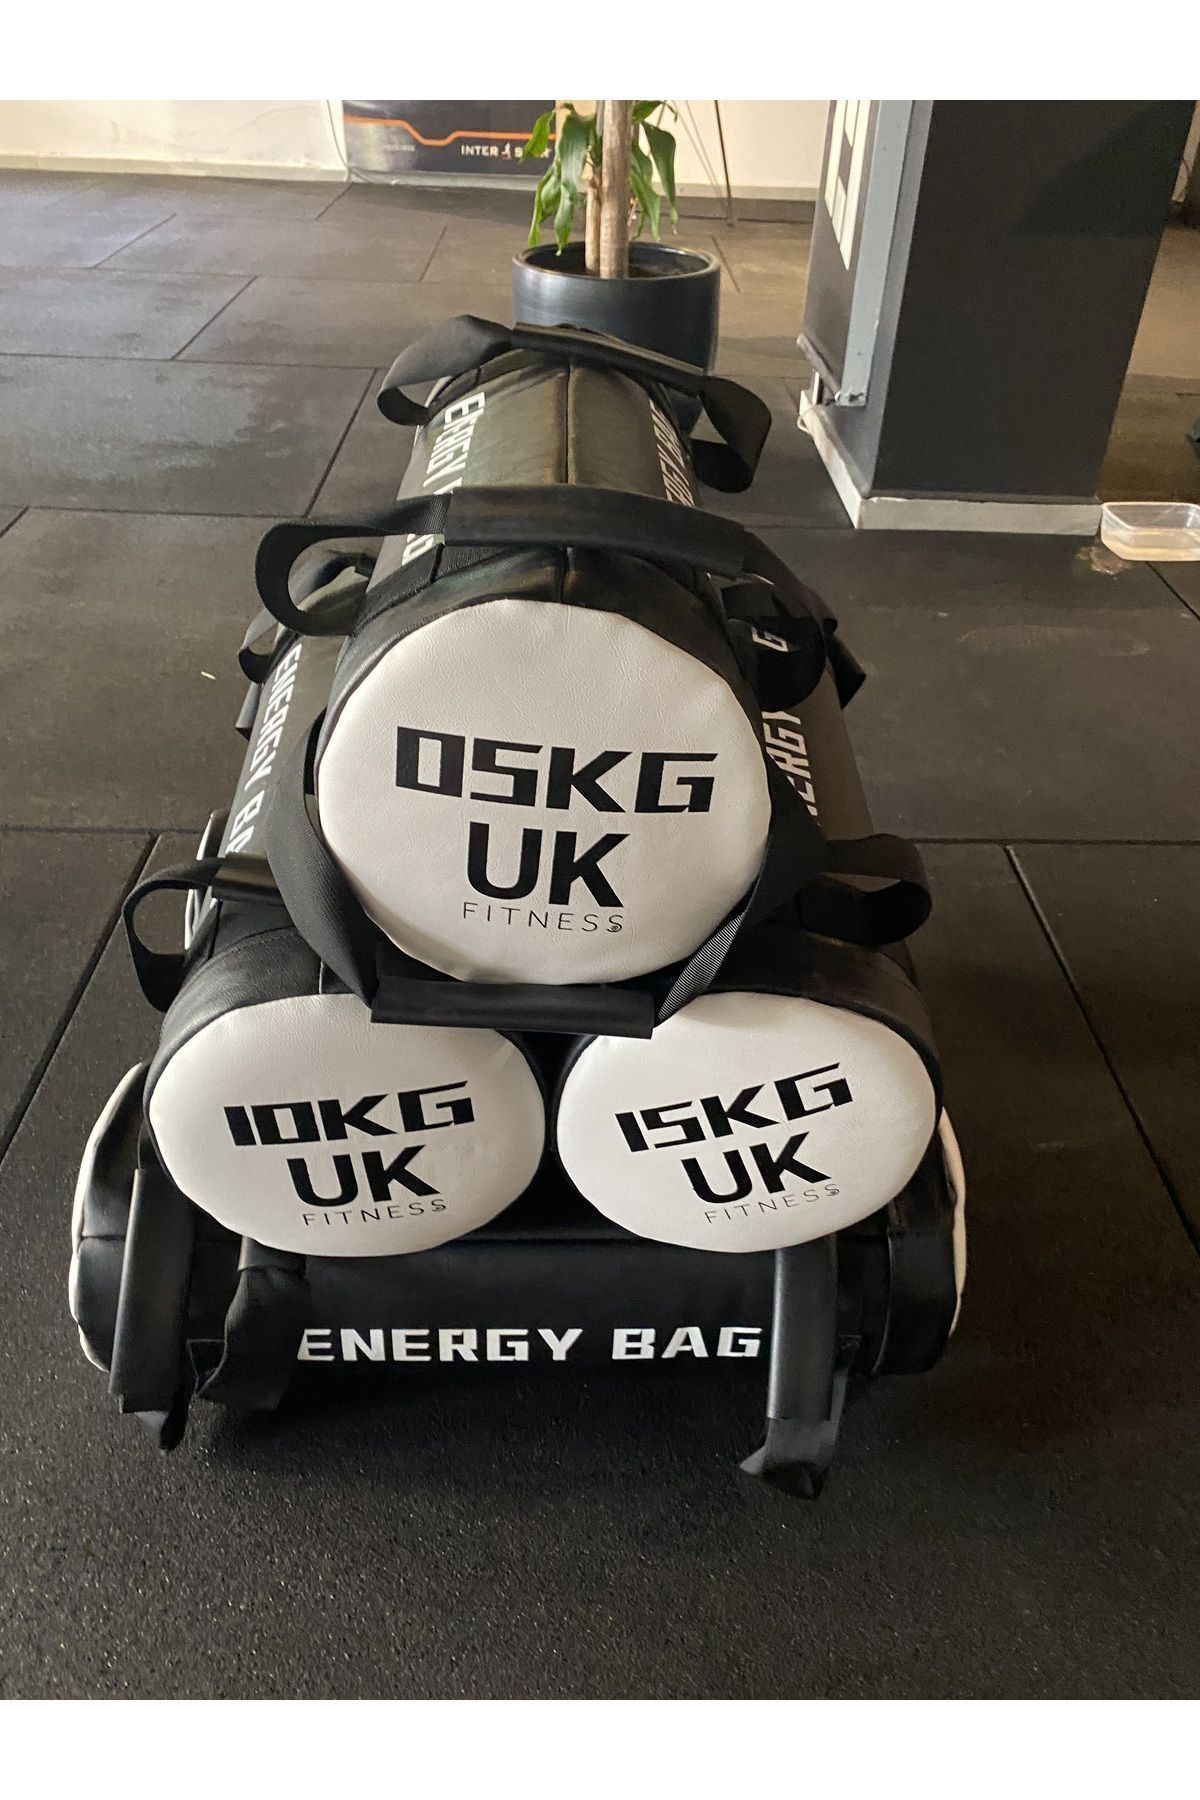 UK FİTNESS Uk Fitness 20 kg Power Bag Ağırlık Çantası Pro.